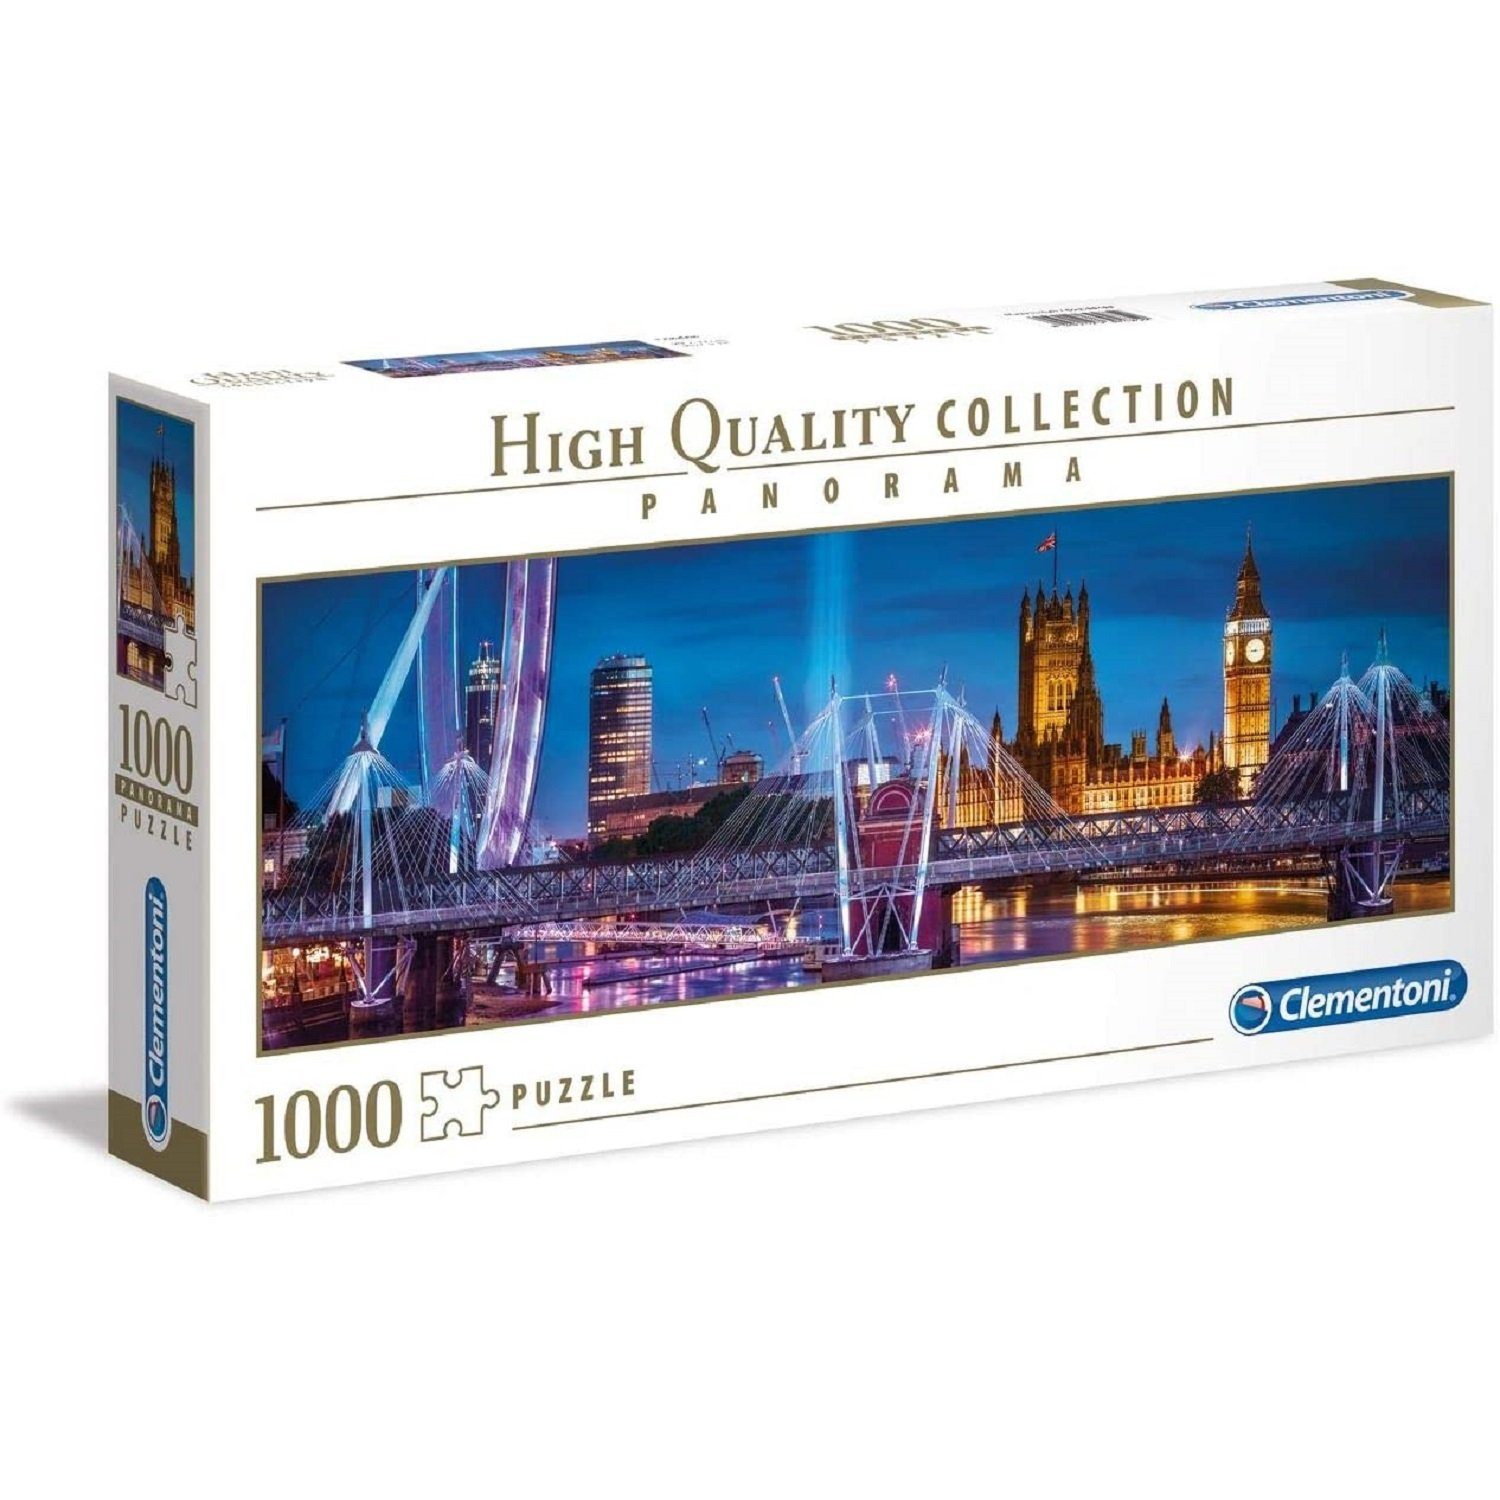 Clementoni Puzzleteile, London Panorama, Clementoni® - Puzzle 1000 1000 Teile Puzzle